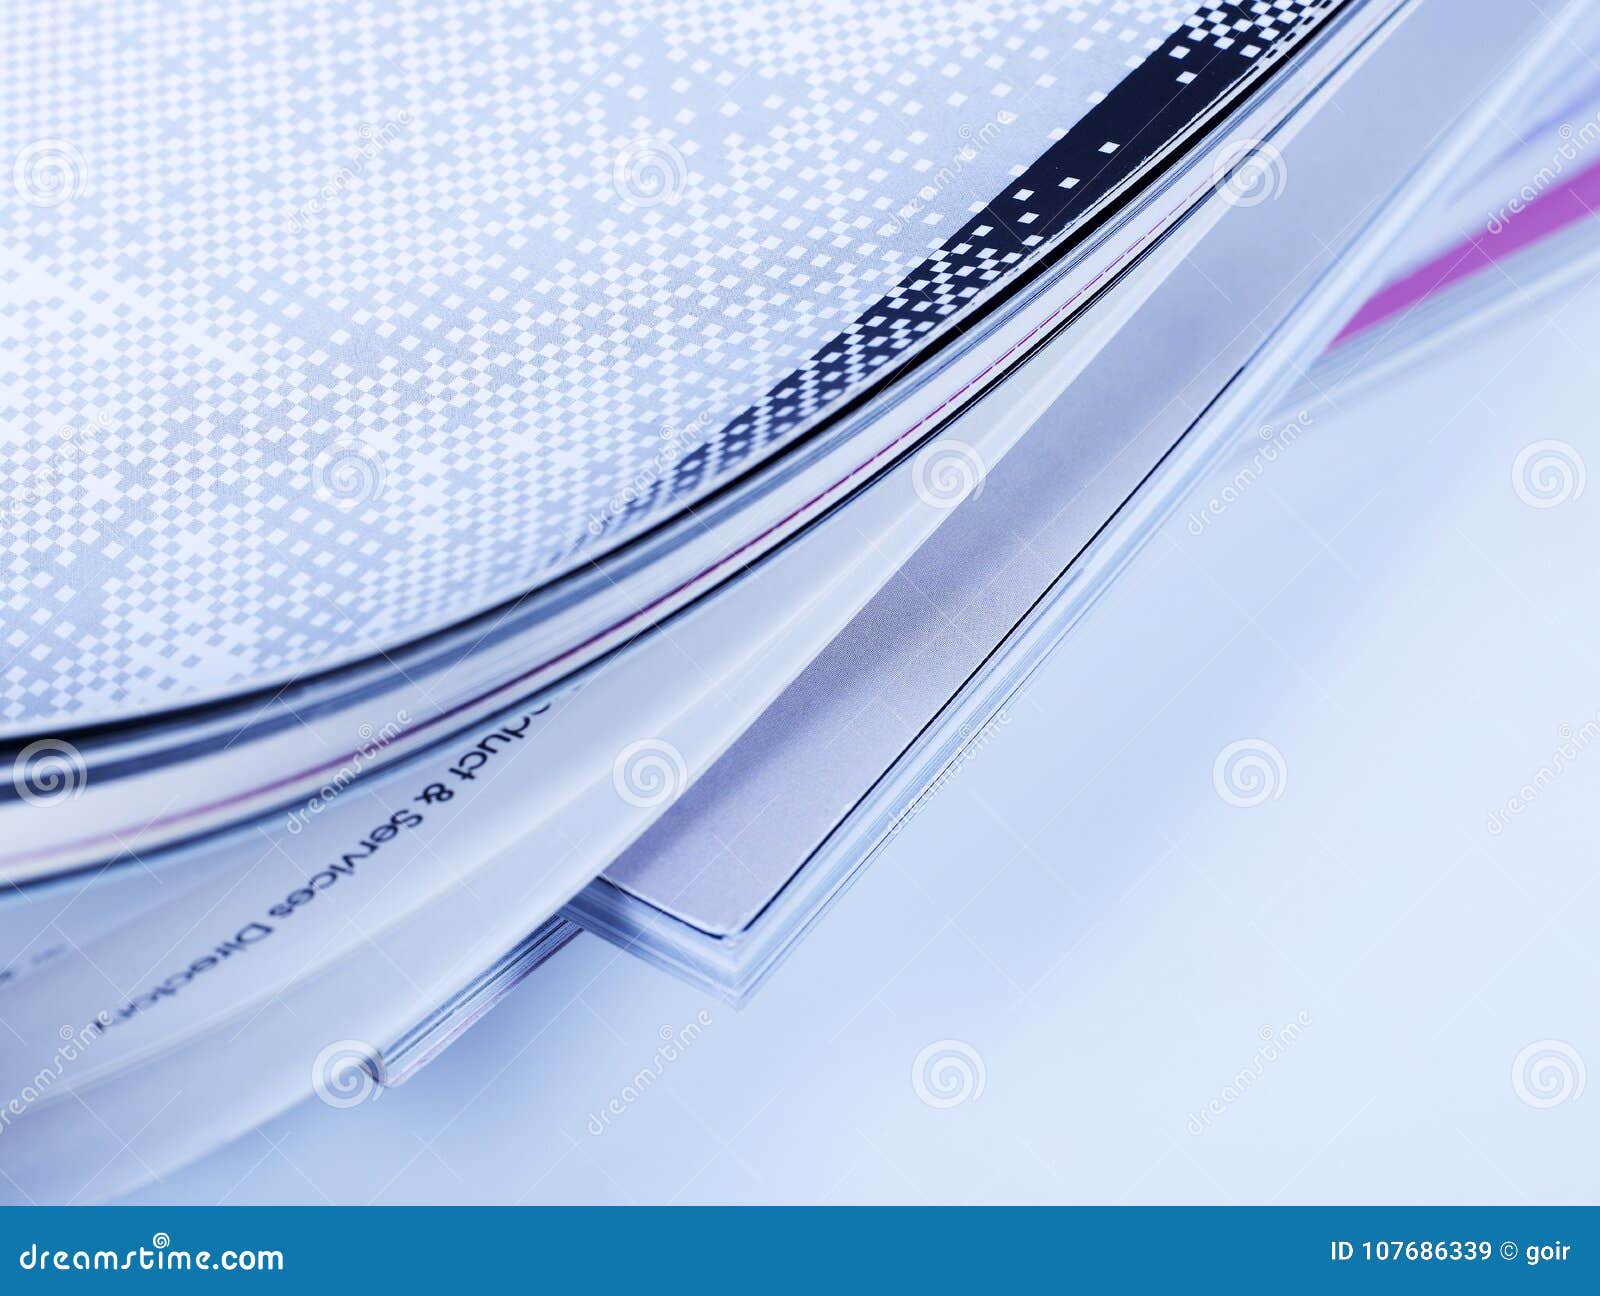 Magazine on Blue Background Stock Image - Image of effect, blurred ...